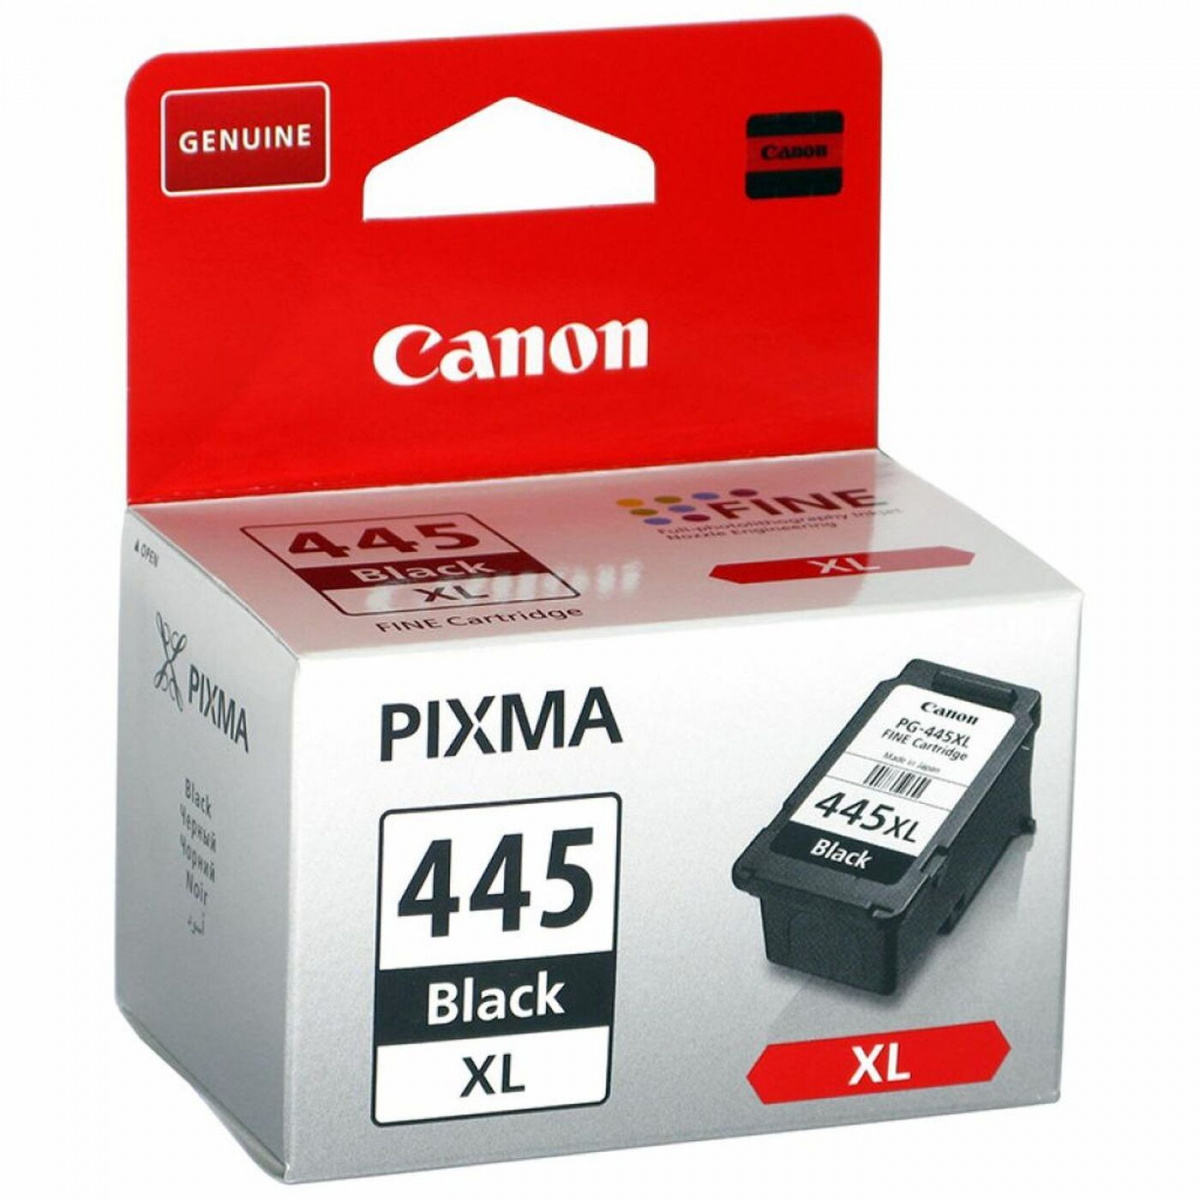 Canon pg 445 картридж для принтера купить. Картридж Canon PG-445xl черный. Canon CL-446xl. Картридж Canon PG-445 для mg2540. Картридж Canon PG-445 XL Black.